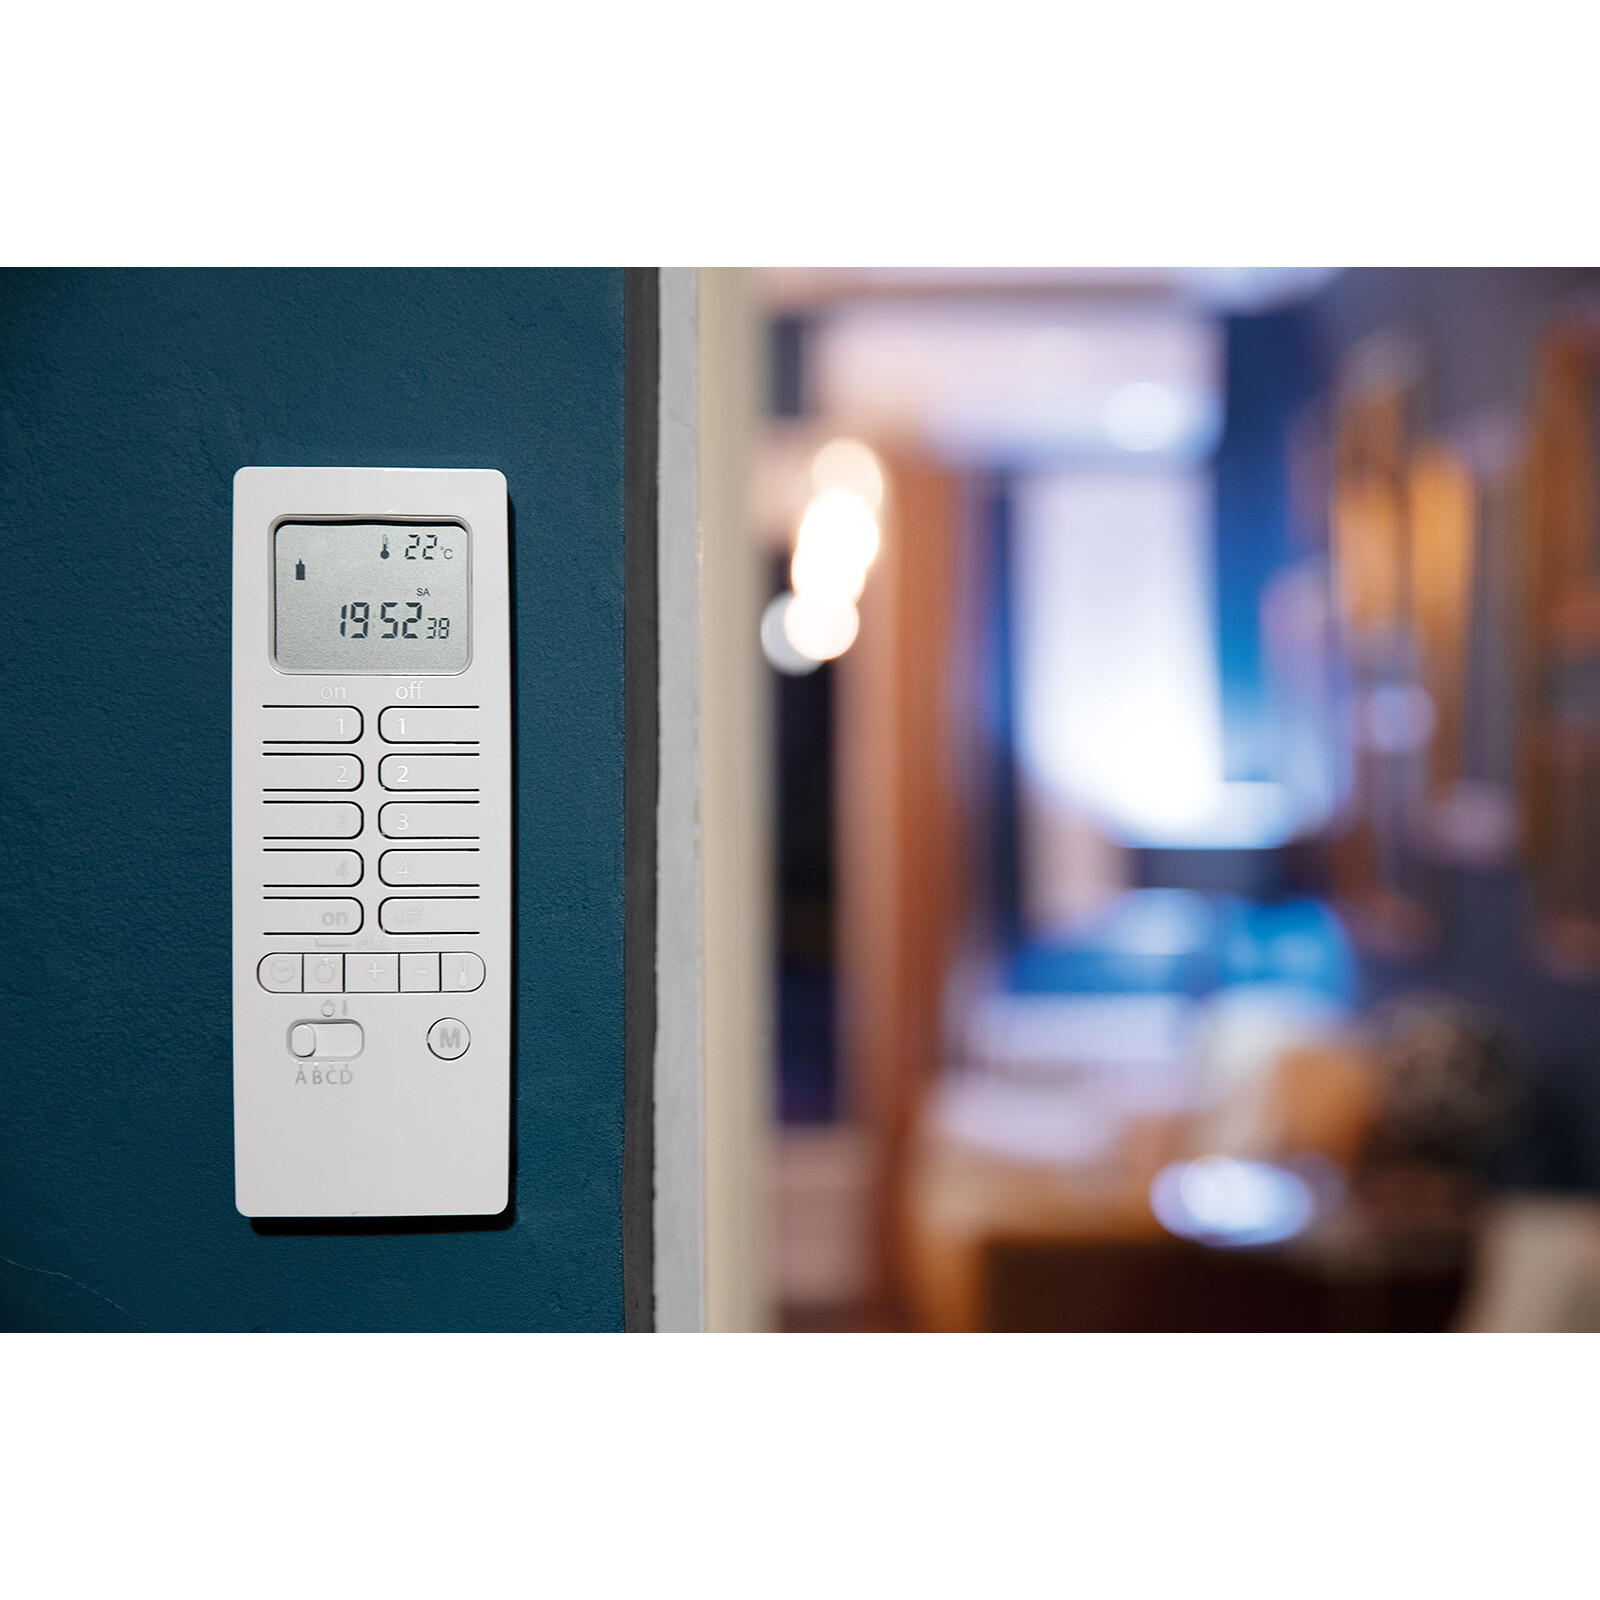 Frient - Capteur de température et humidité intelligent Zigbee 20203500 -  Thermostat connecté - LDLC